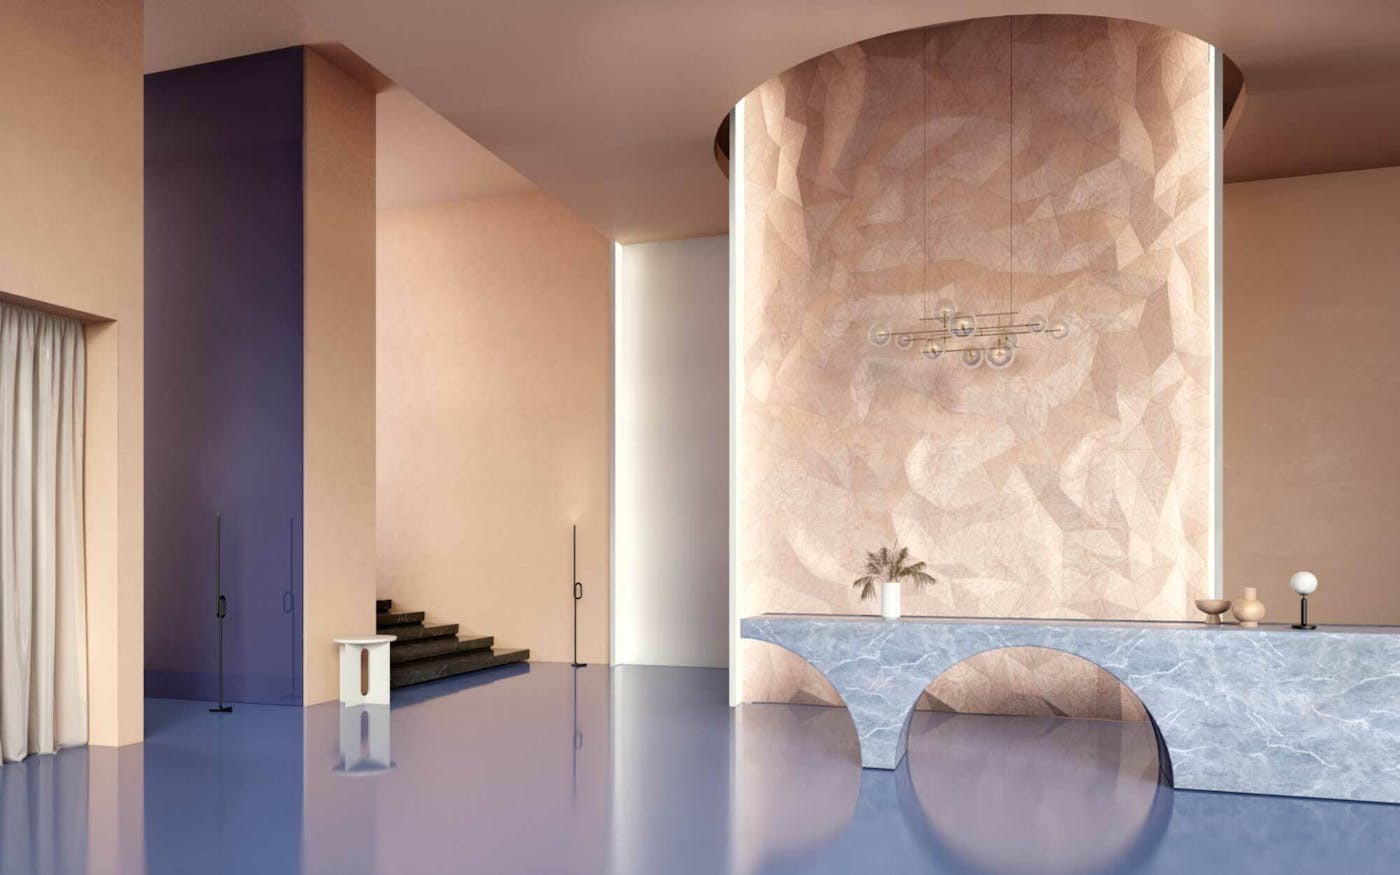 Wood Skin Konzept K 3 D panel Wall Ceiling Decor Acoustic Geometric Vegg Tak Møbelproduksjon Akustikk 7